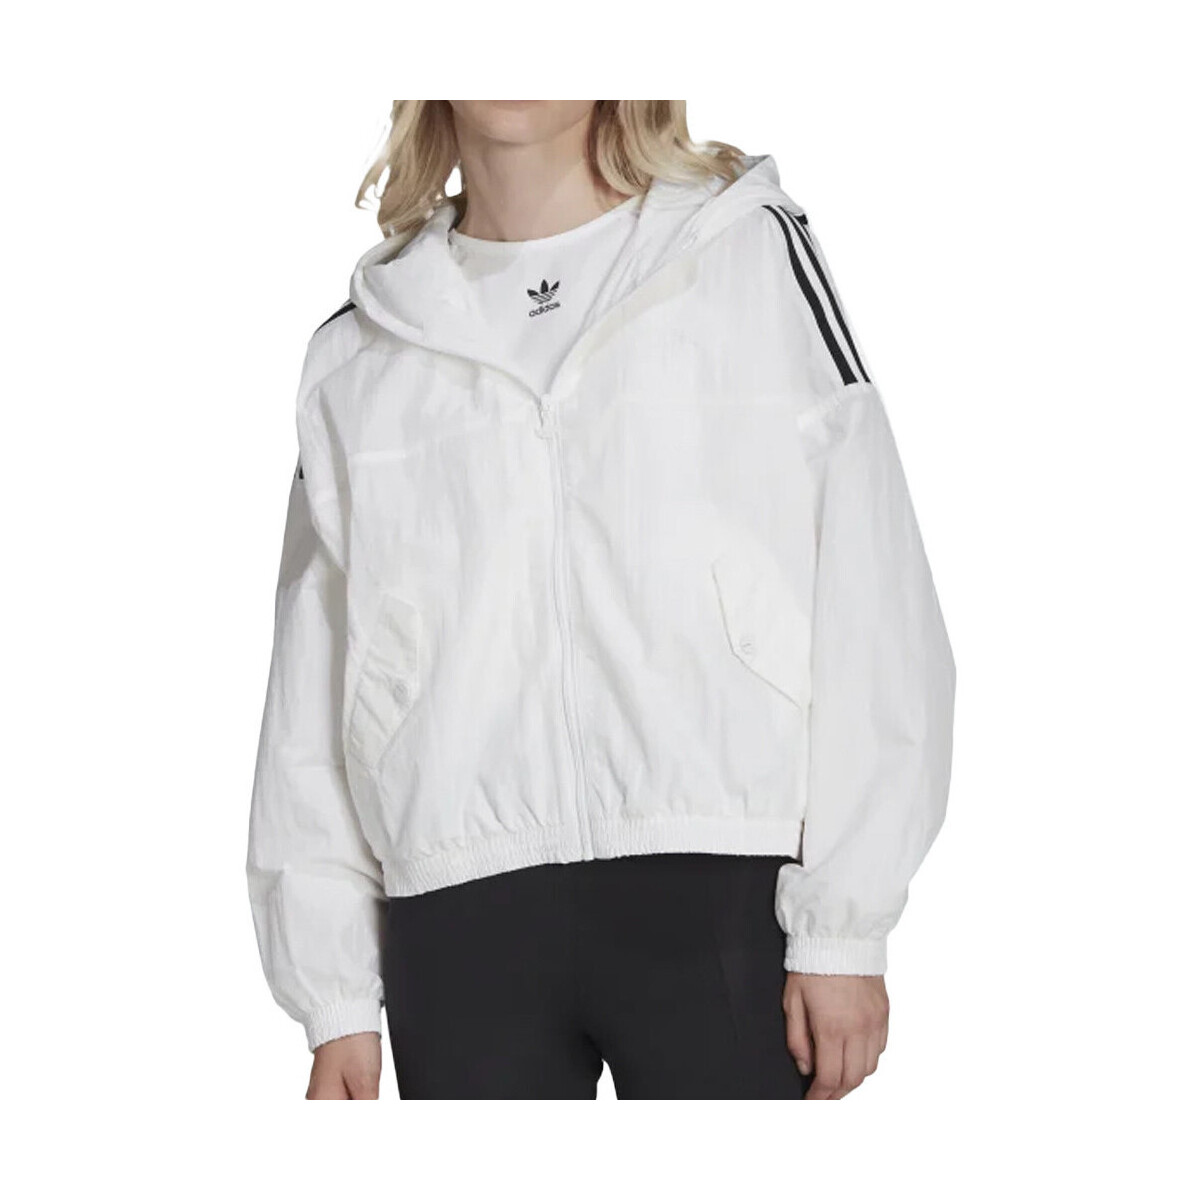 Abbigliamento Donna giacca a vento adidas Originals HC2023 Bianco